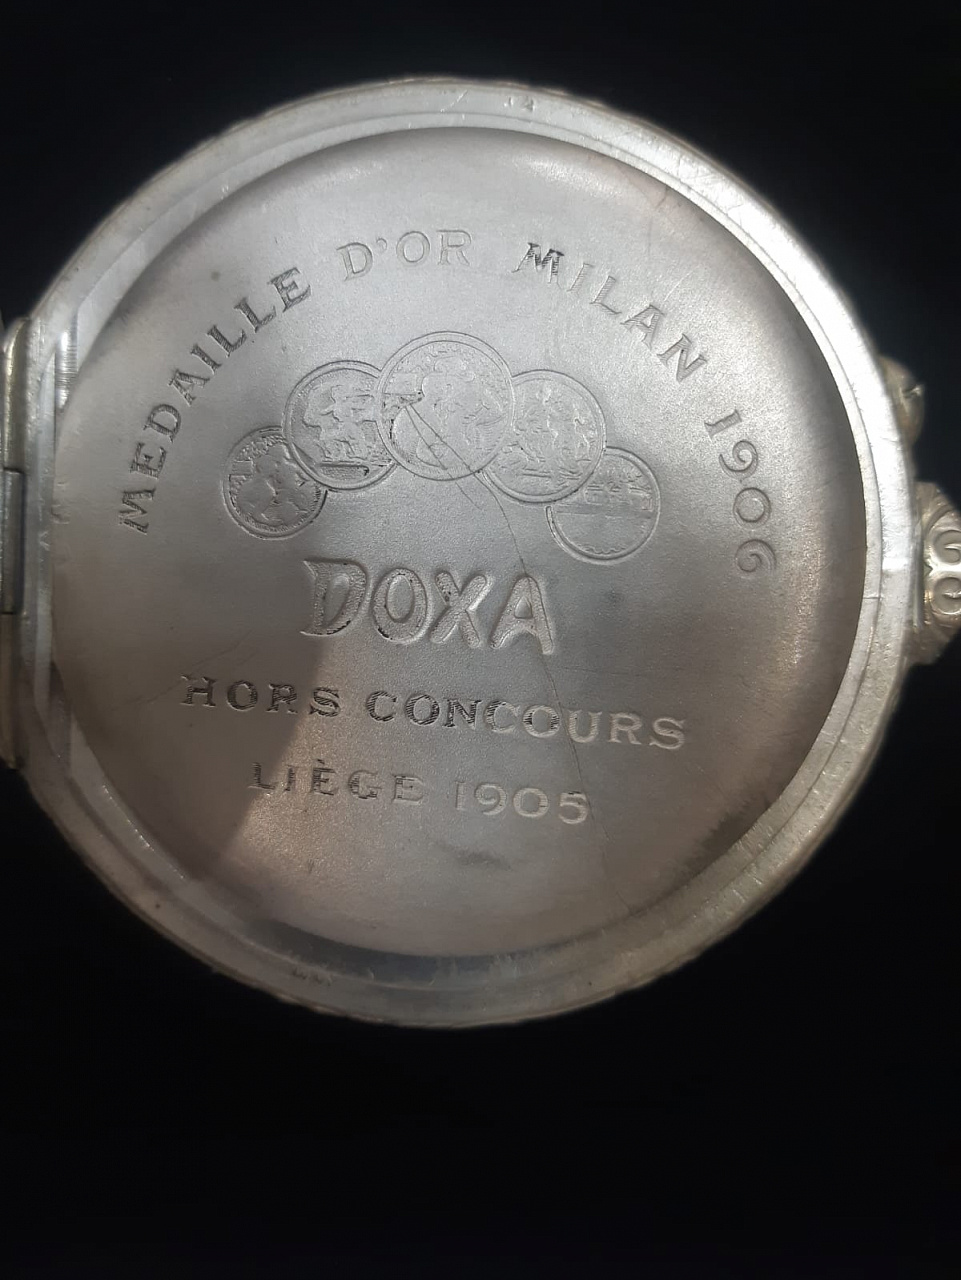 ковровые часы Doxa, 1905-1910 гг  фото 3